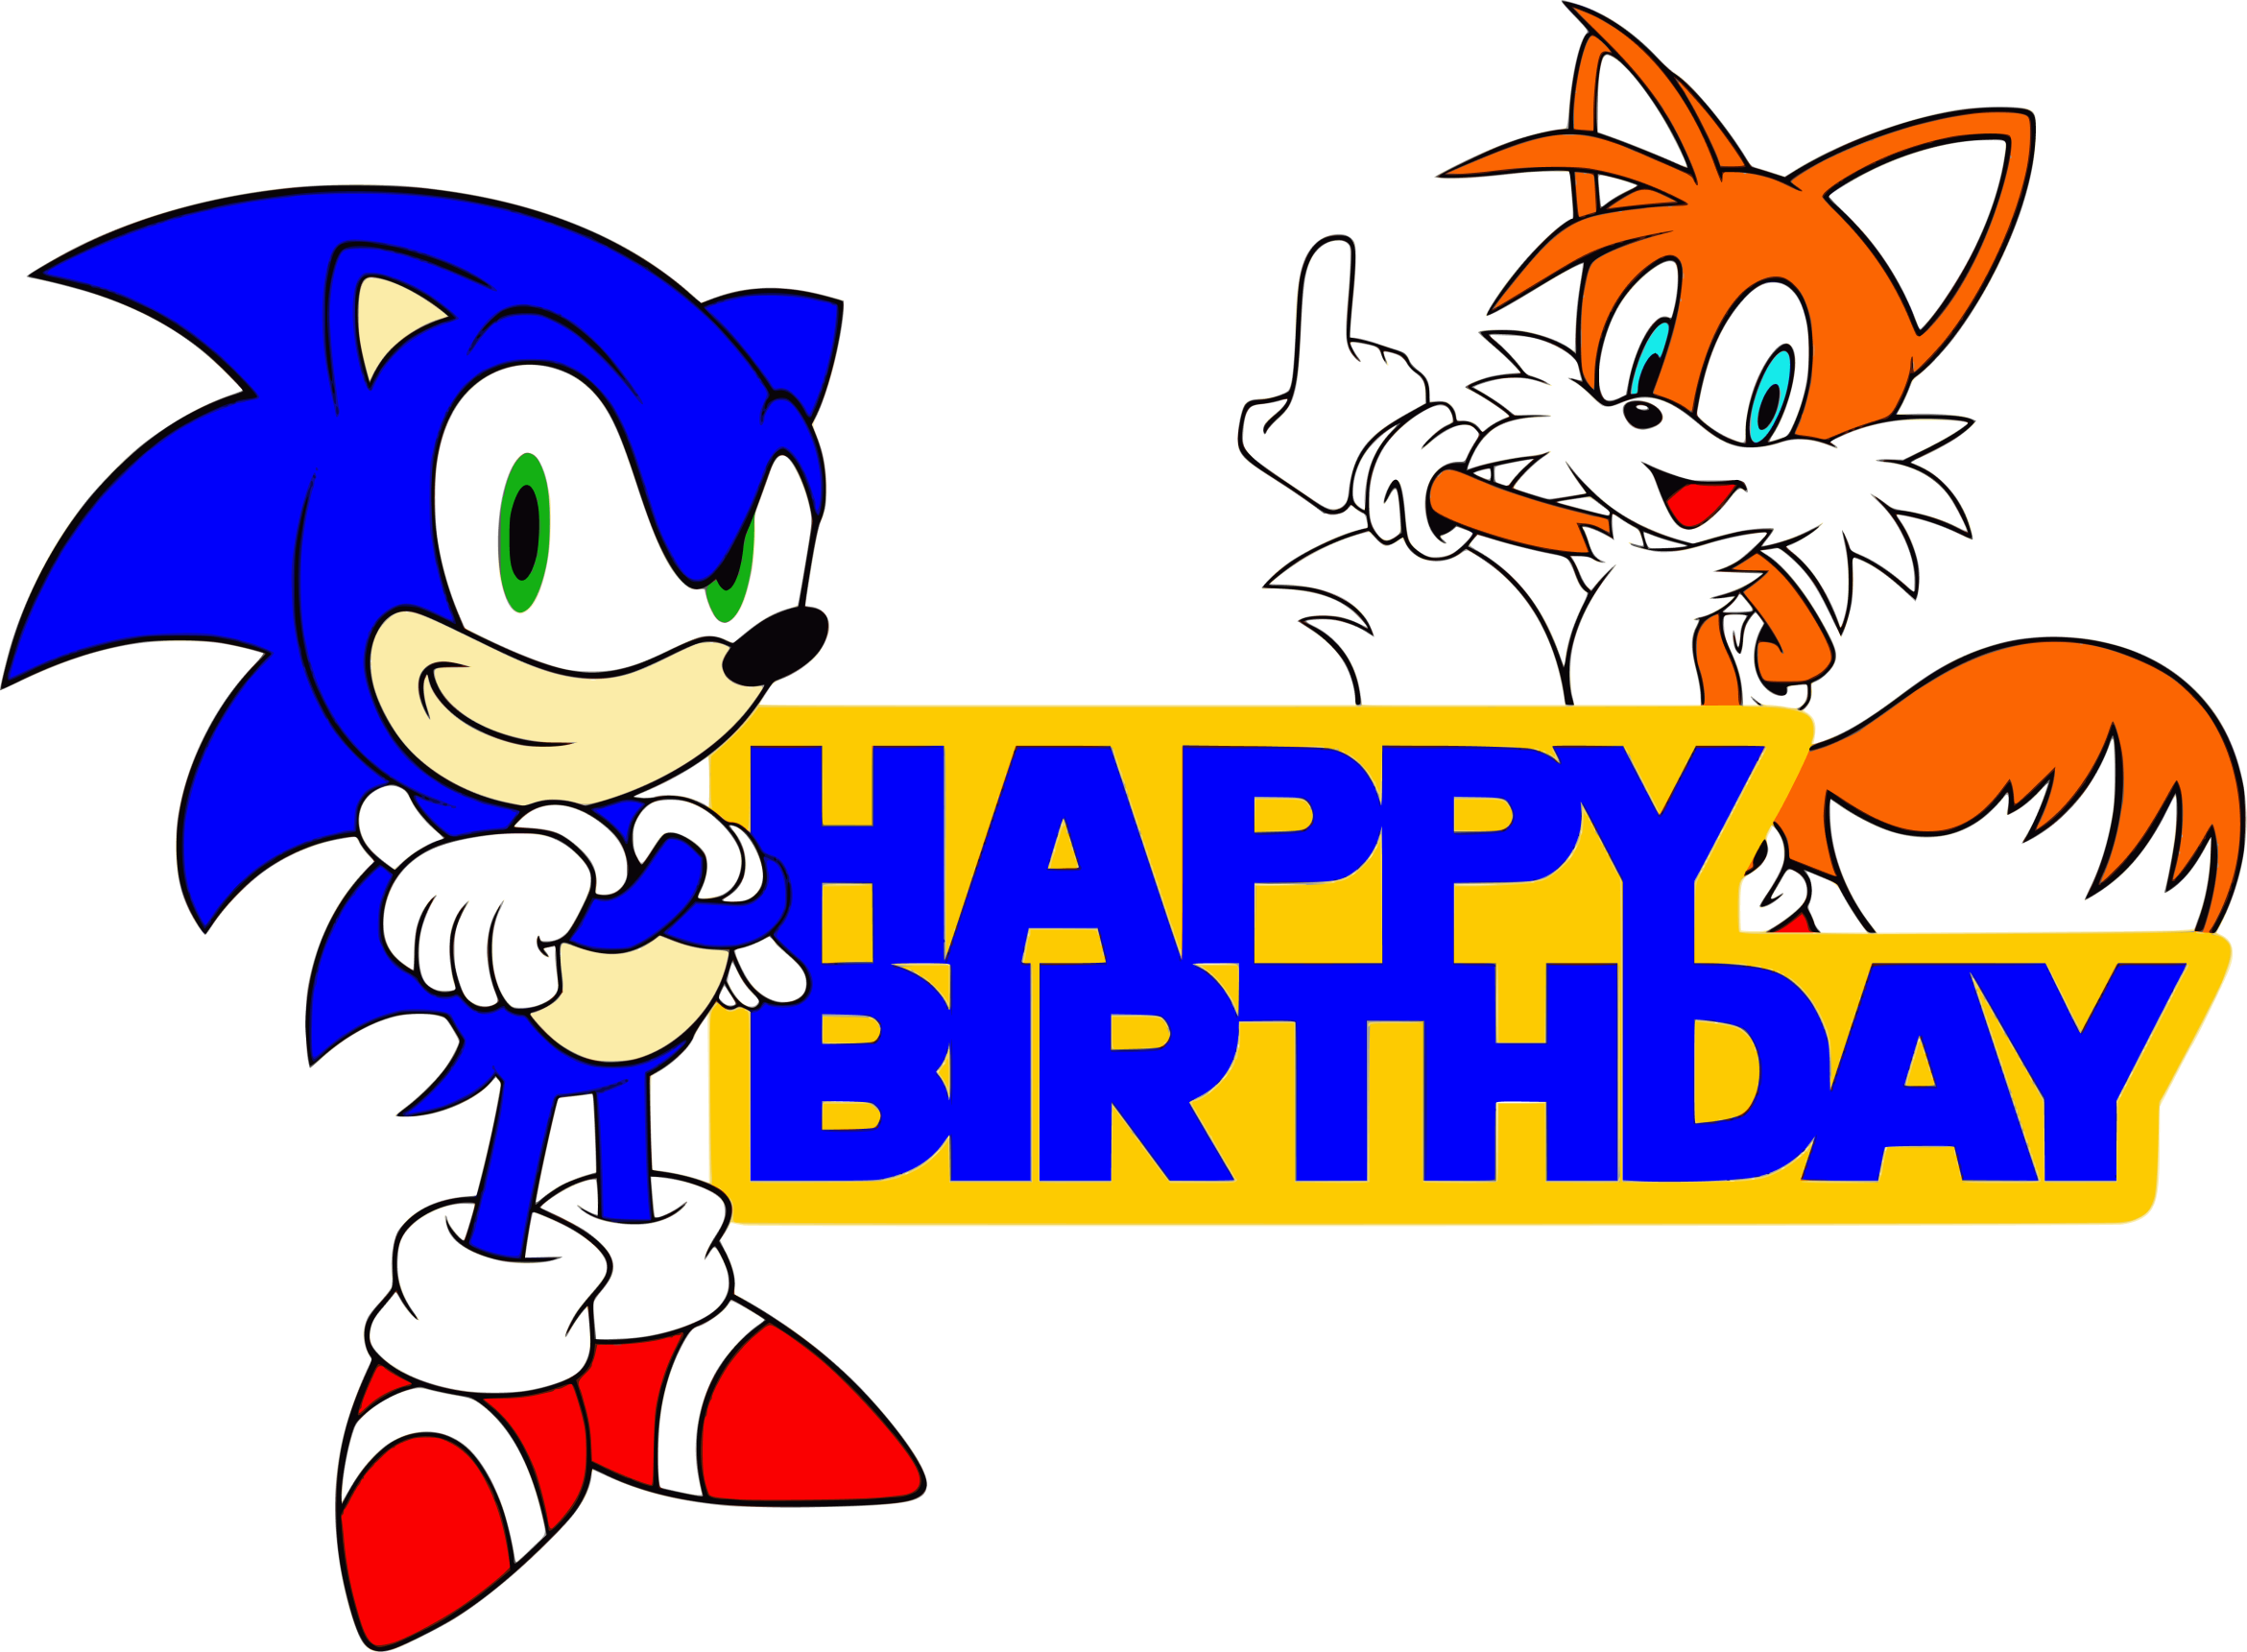 Sonic Birthday Svg – MasterBundles